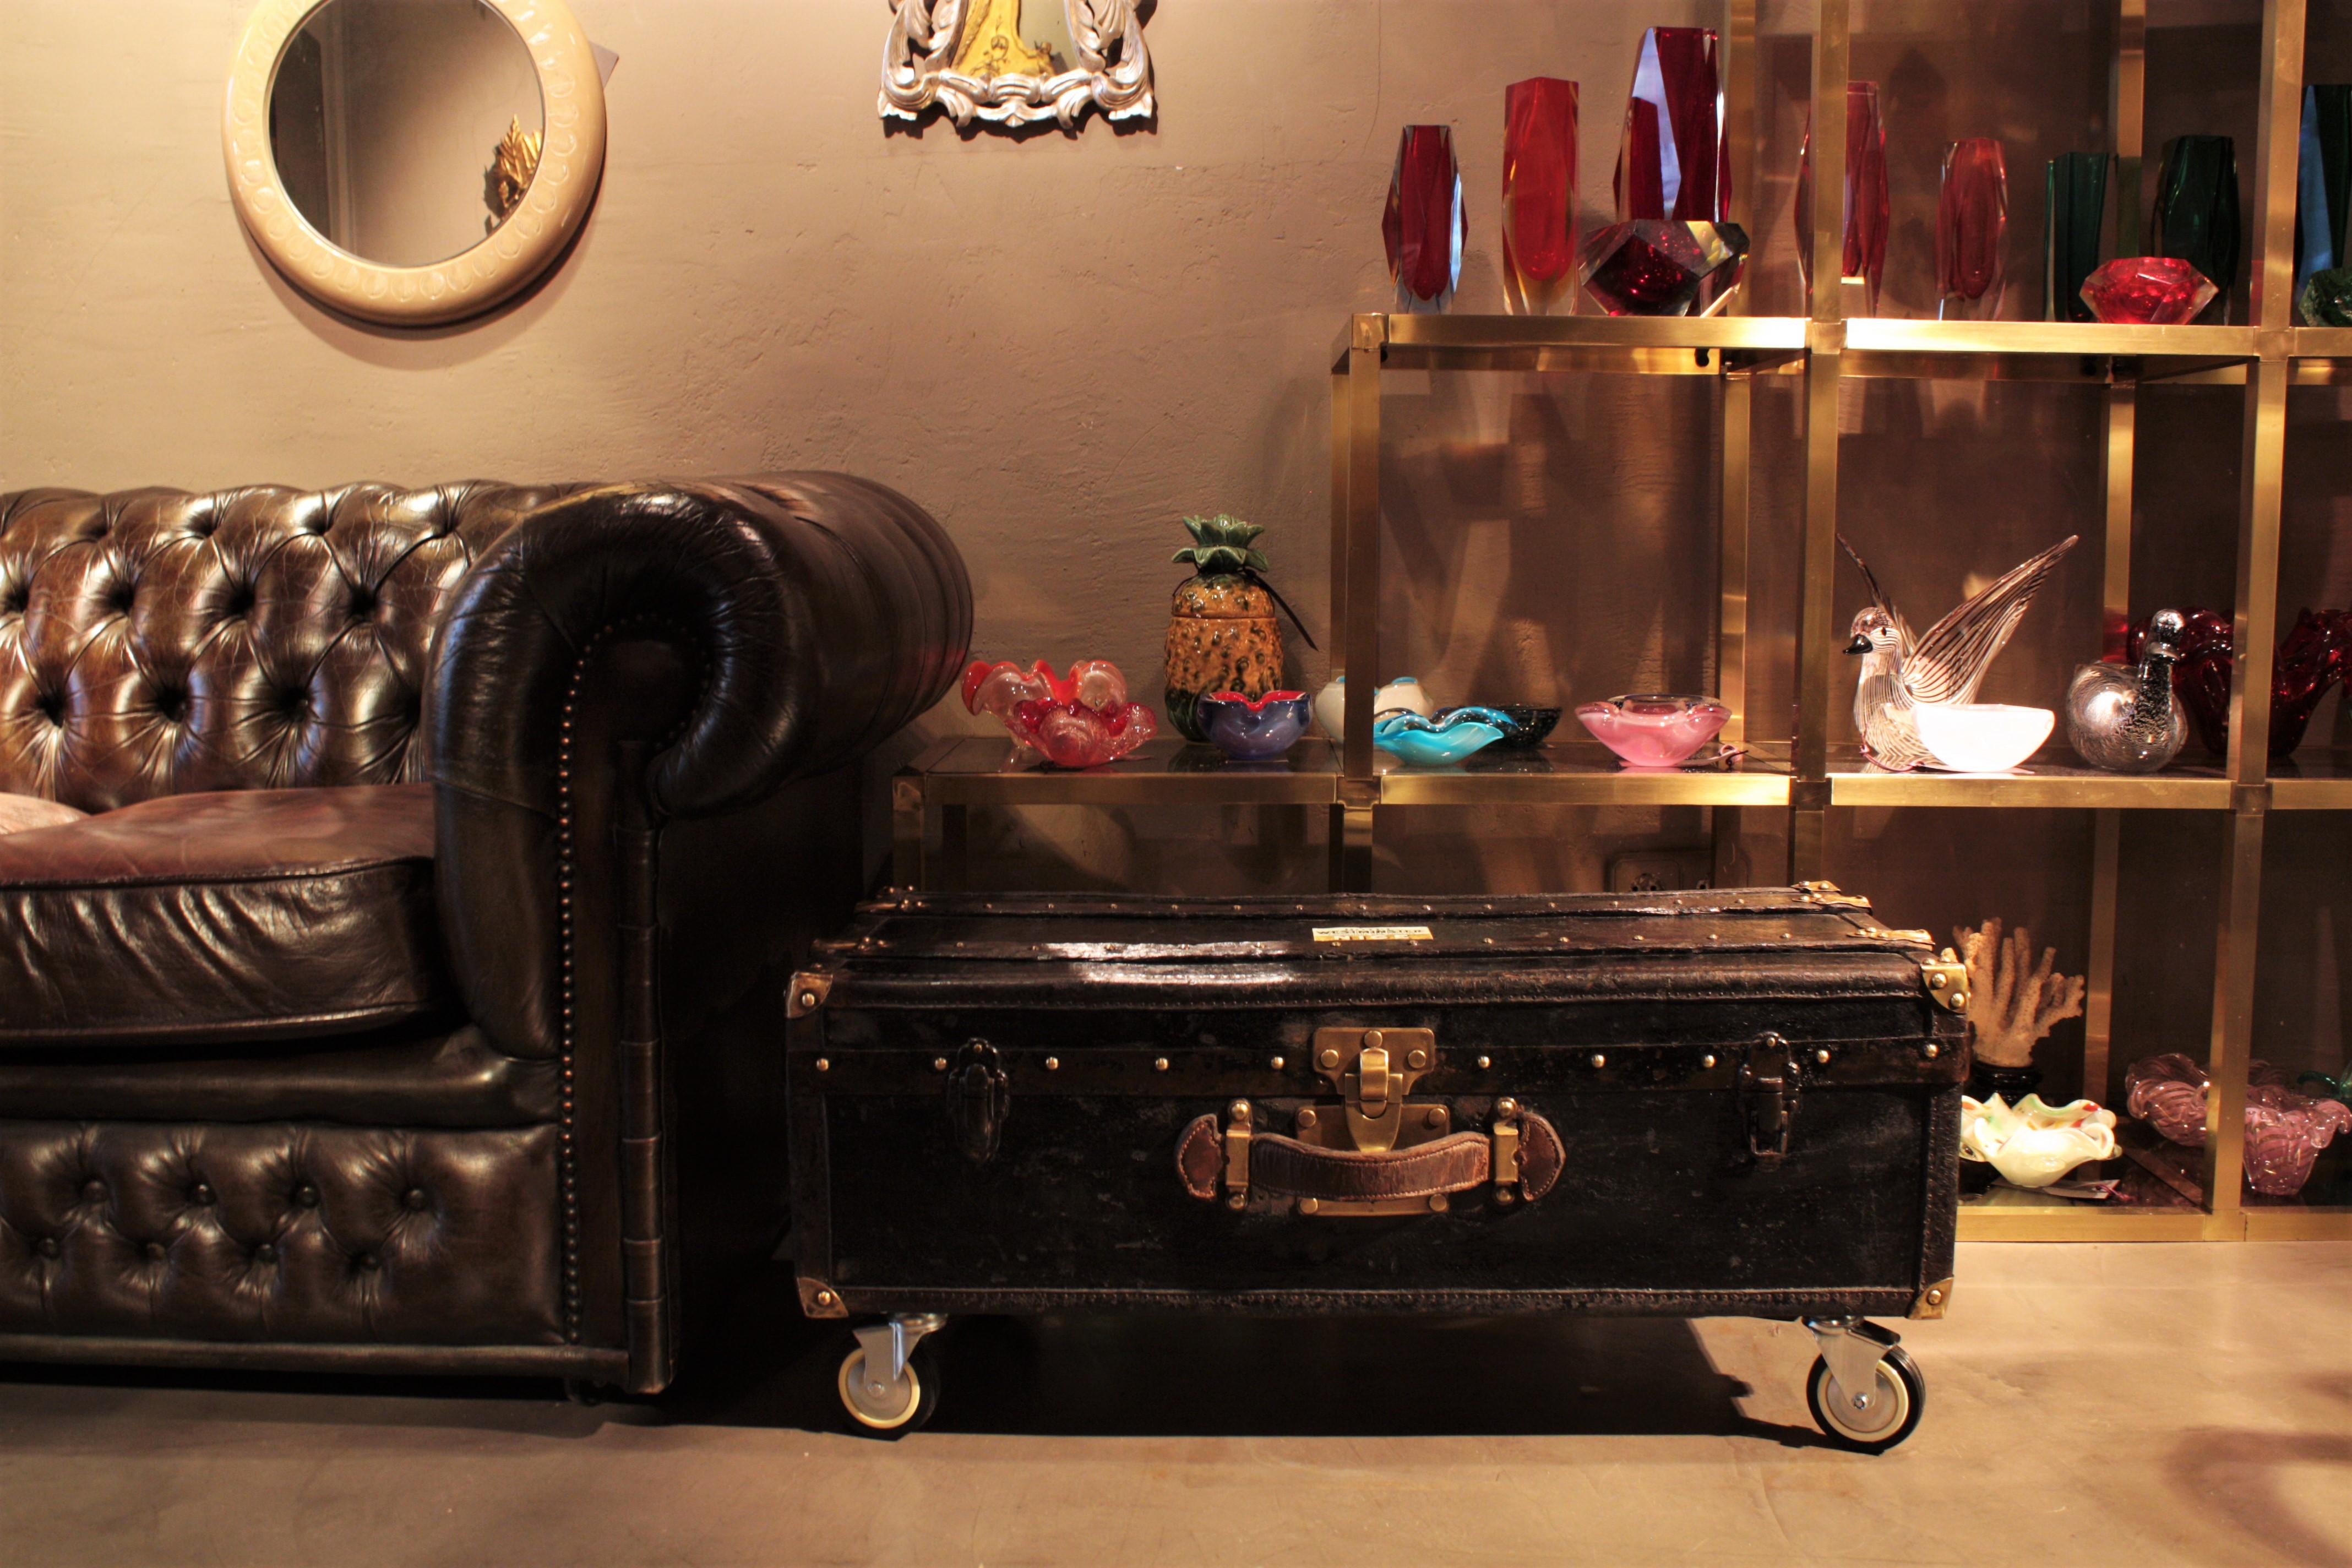 Belle malle en toile et cuir noir comme table basse / table d'appoint. France, 19ème siècle.
Cette malle est entièrement réalisée en bois recouvert de toile noire. Il est doté de barres en bois, de protections en cuir, de clous et d'accessoires en